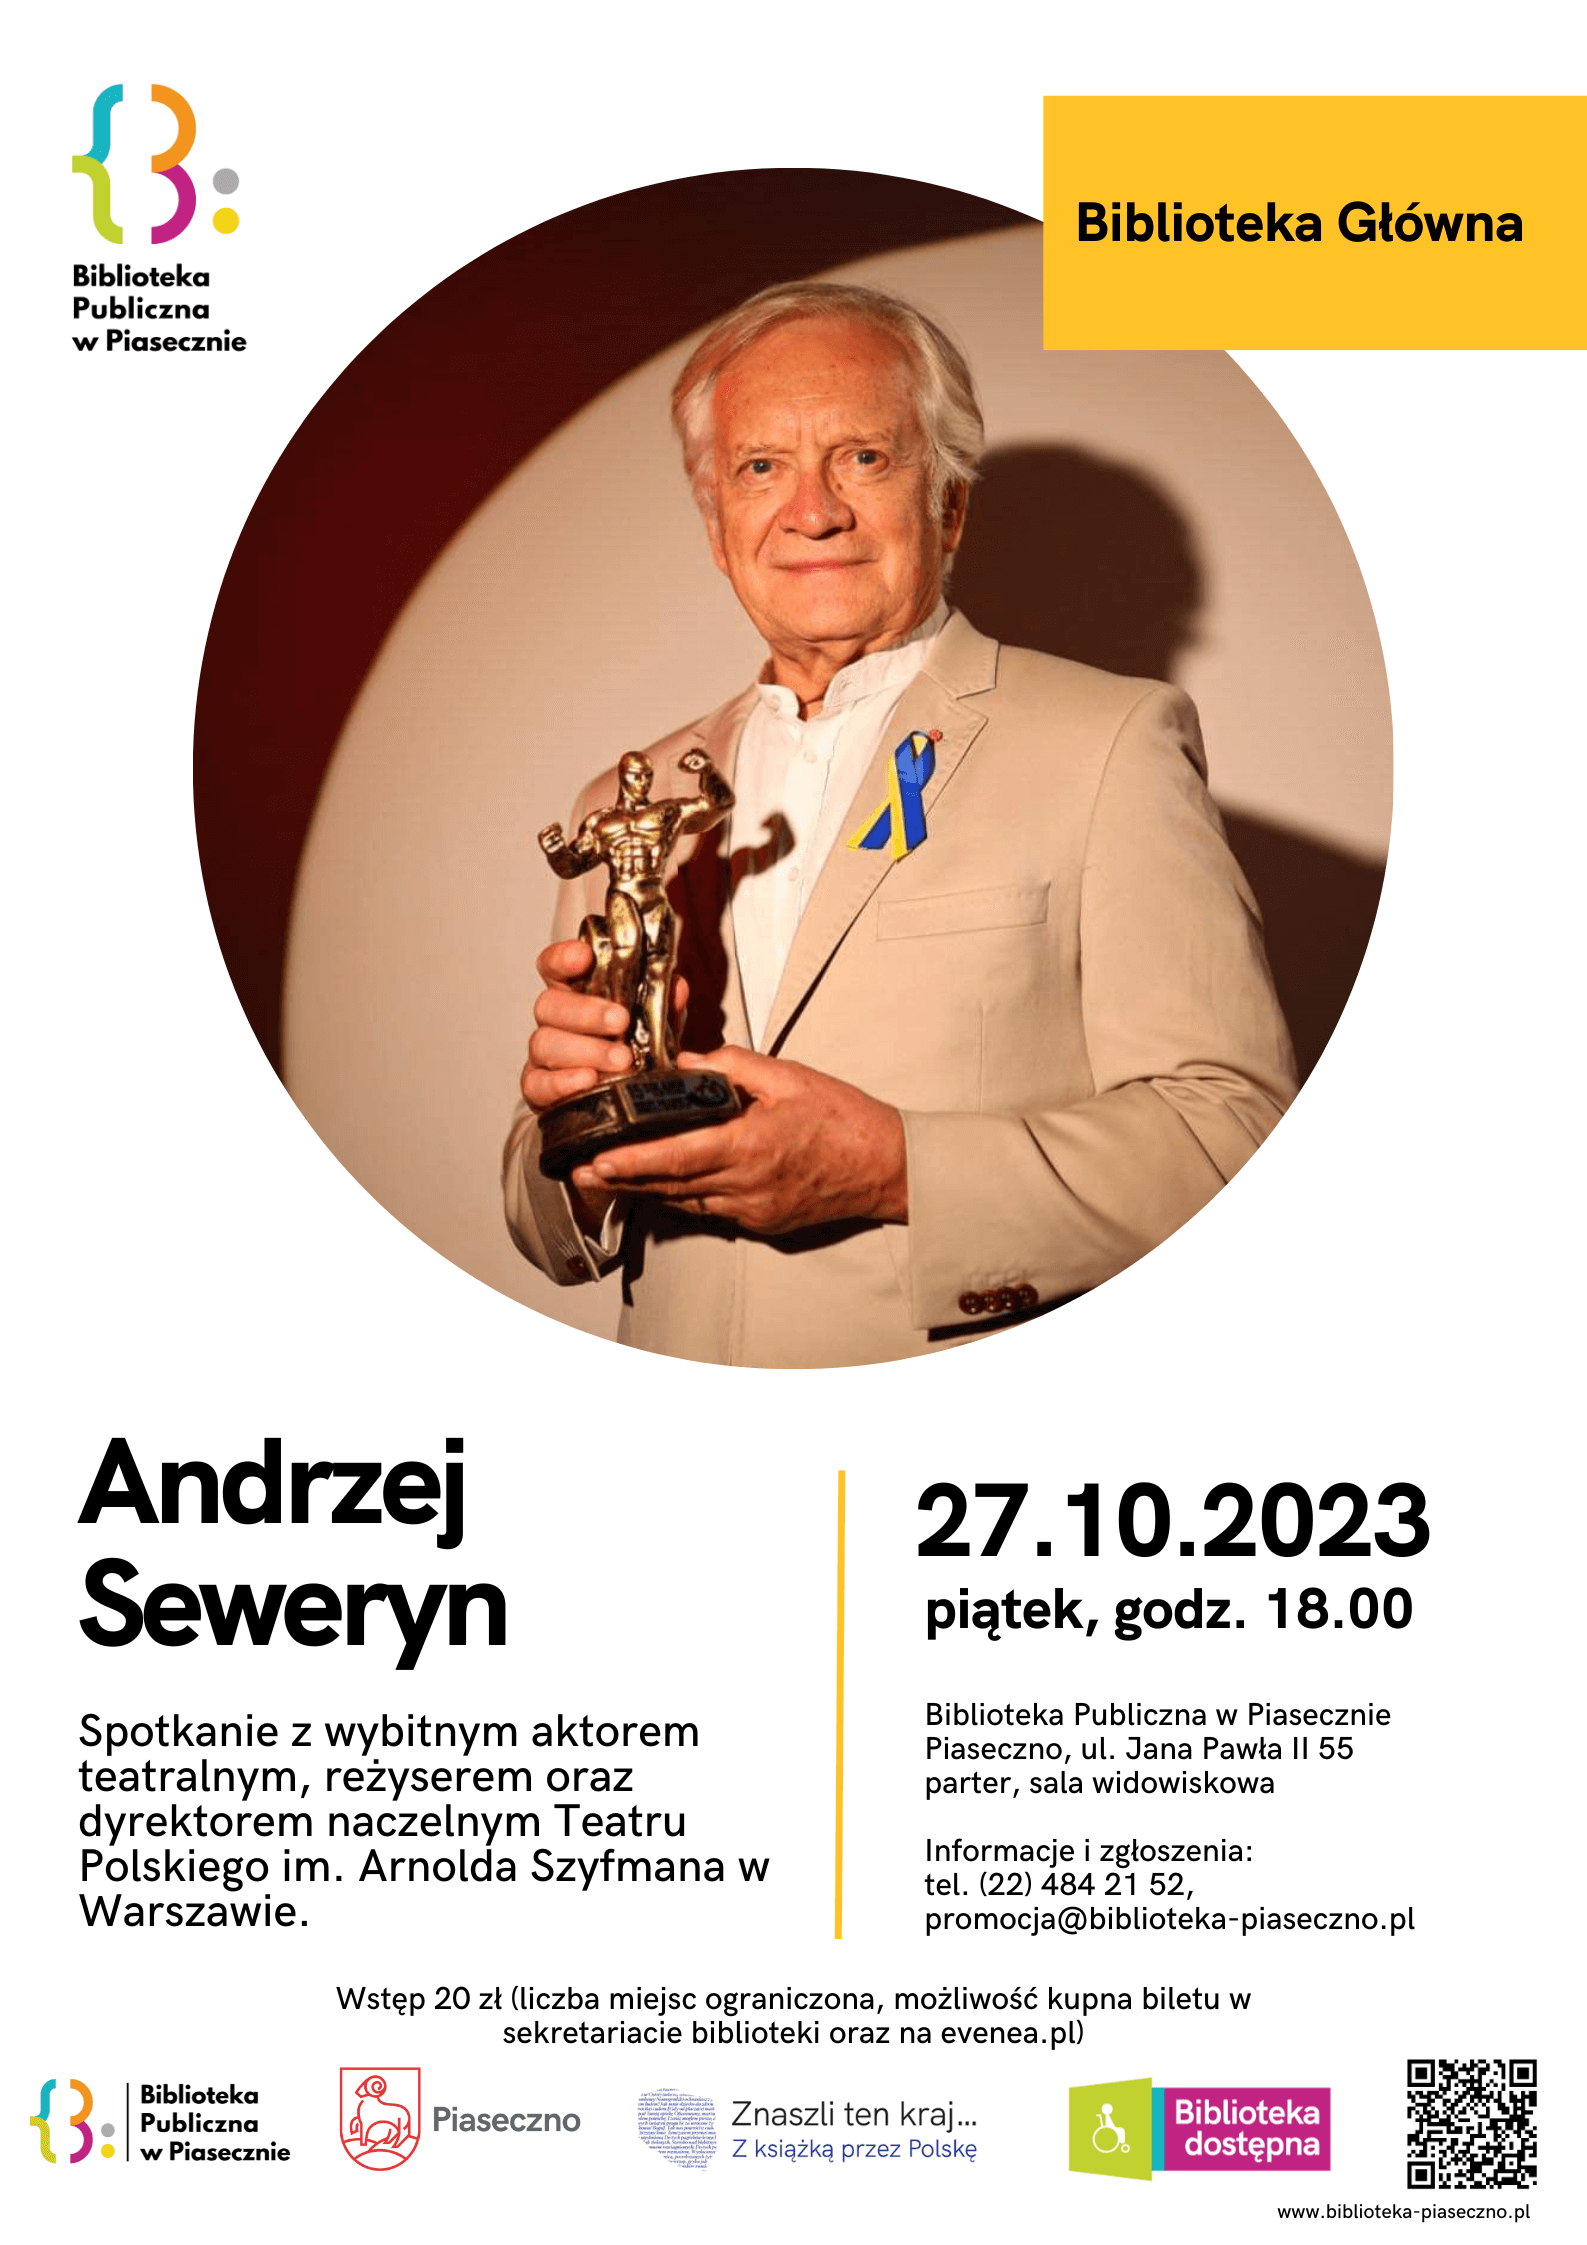 Plakat informujący o spotkaniu autorskim z Andrzejem Sewerynem 27 października 2023 r. w Bibliotece Publicznej w Piasecznie